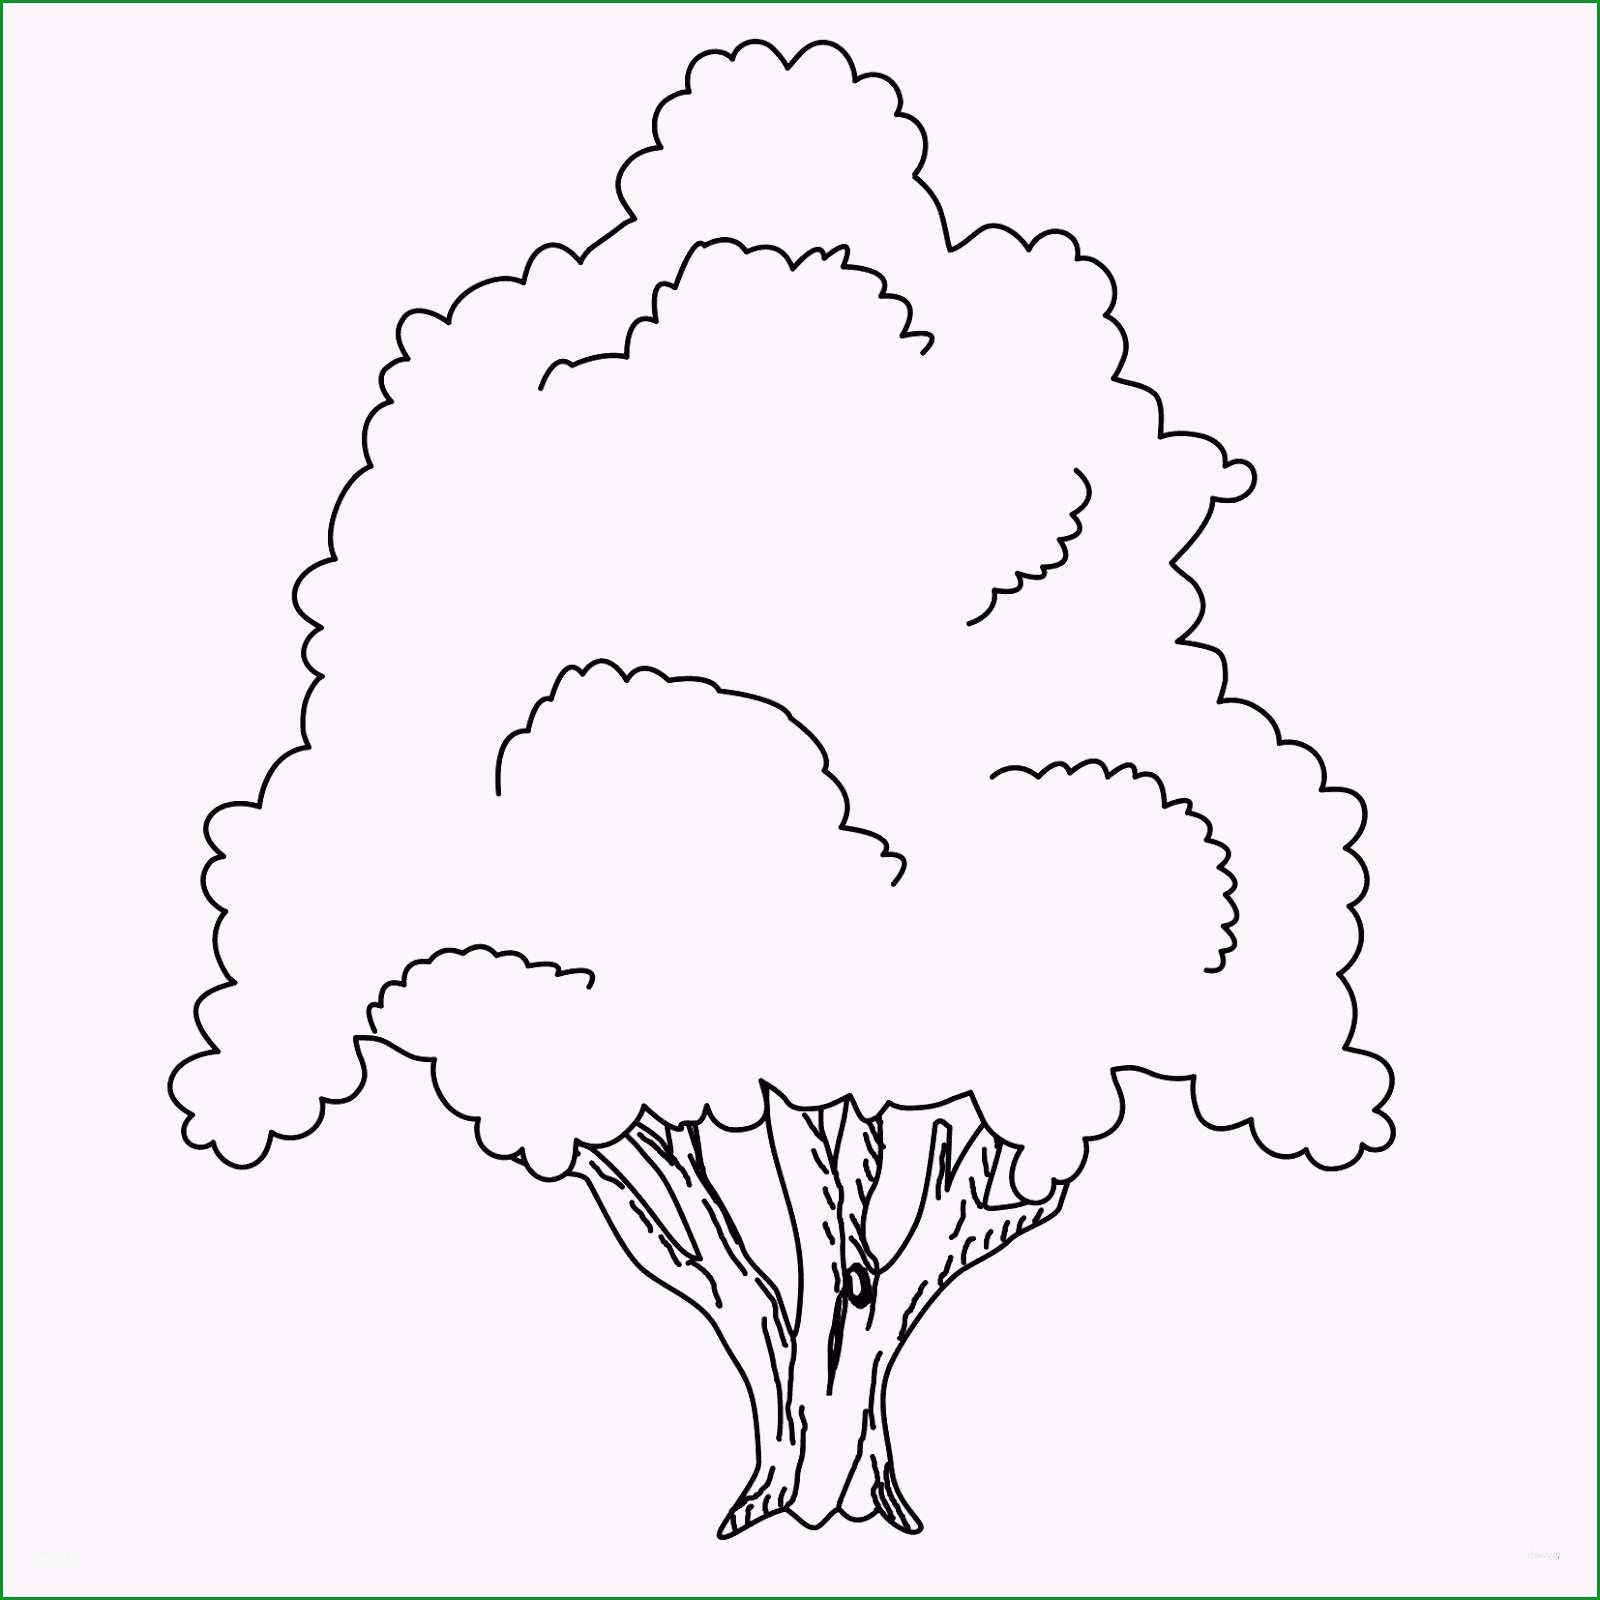 lebensbaum zur taufe best einladung taufe lebensbaum hipop handloomub